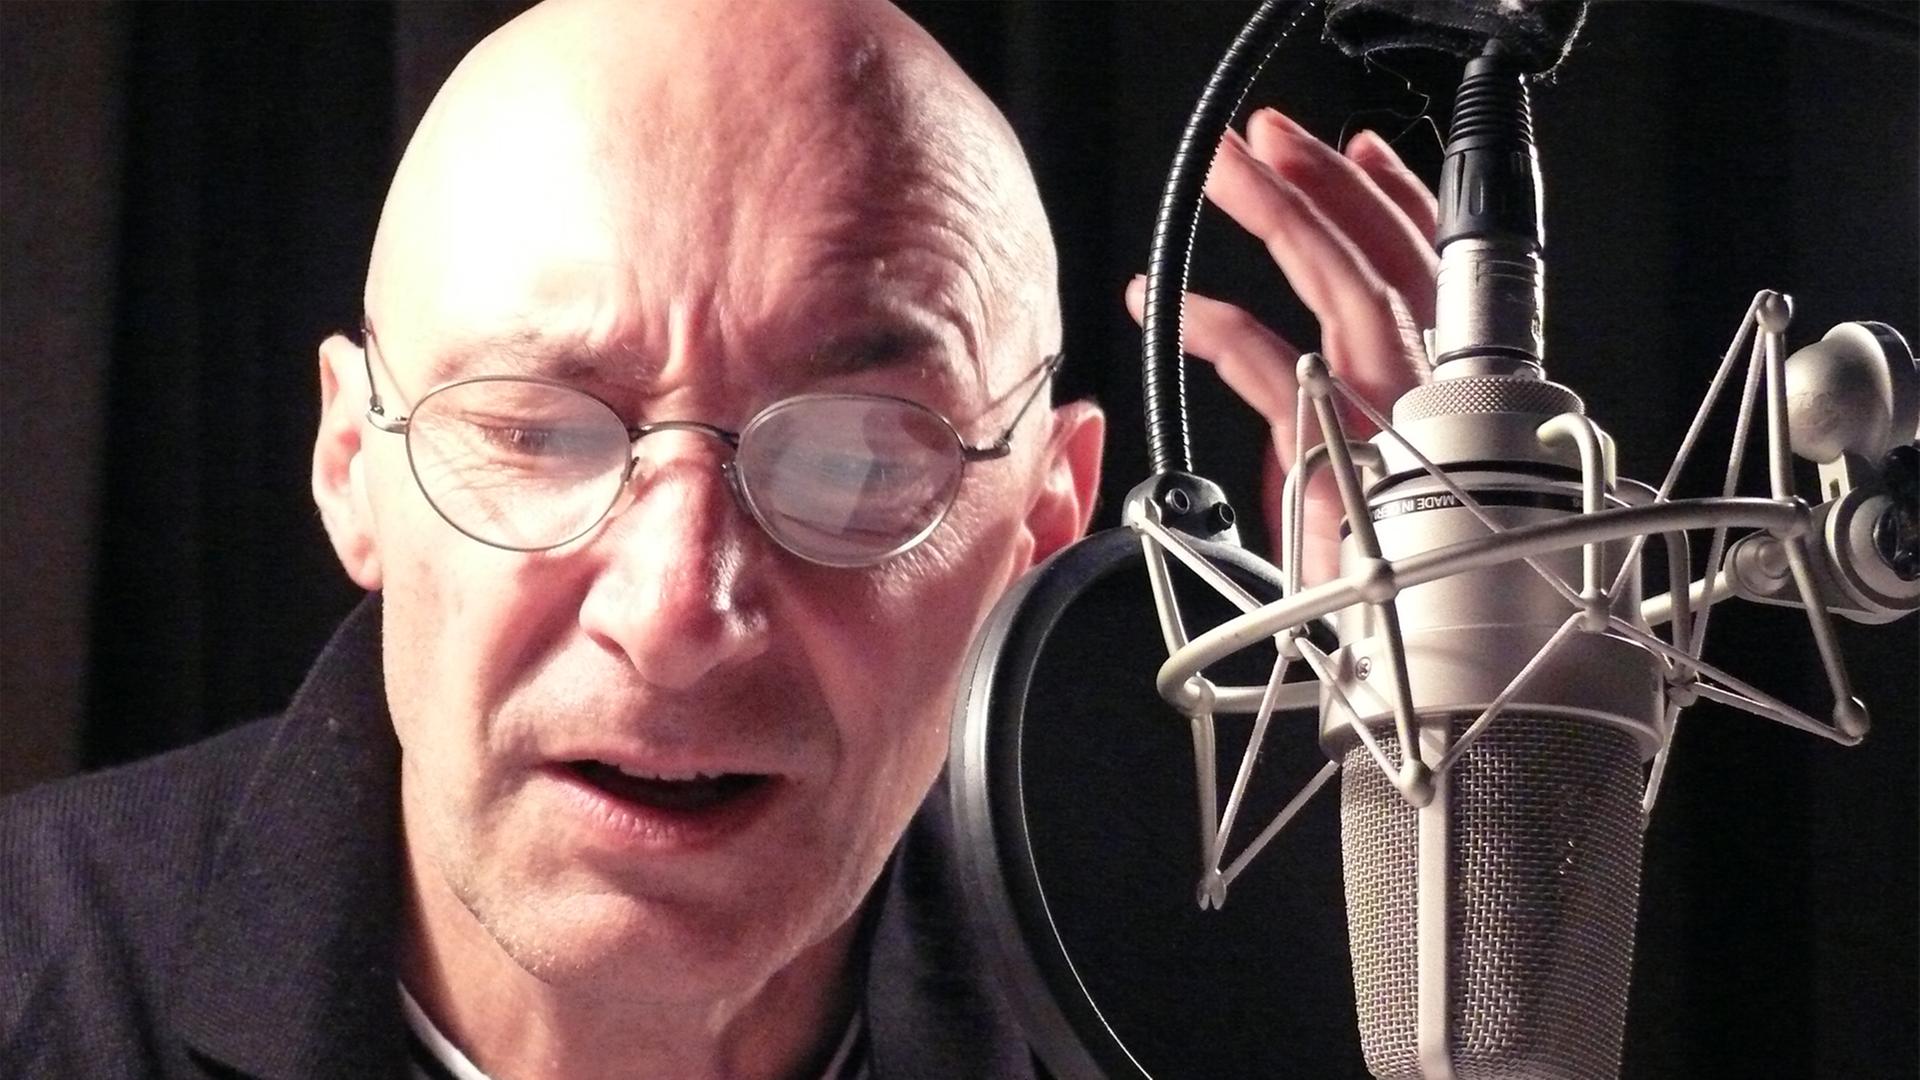 Der Schauspieler Andreas Grothgar während einer Hörspielaufnahme im Studio am Mikrofon.